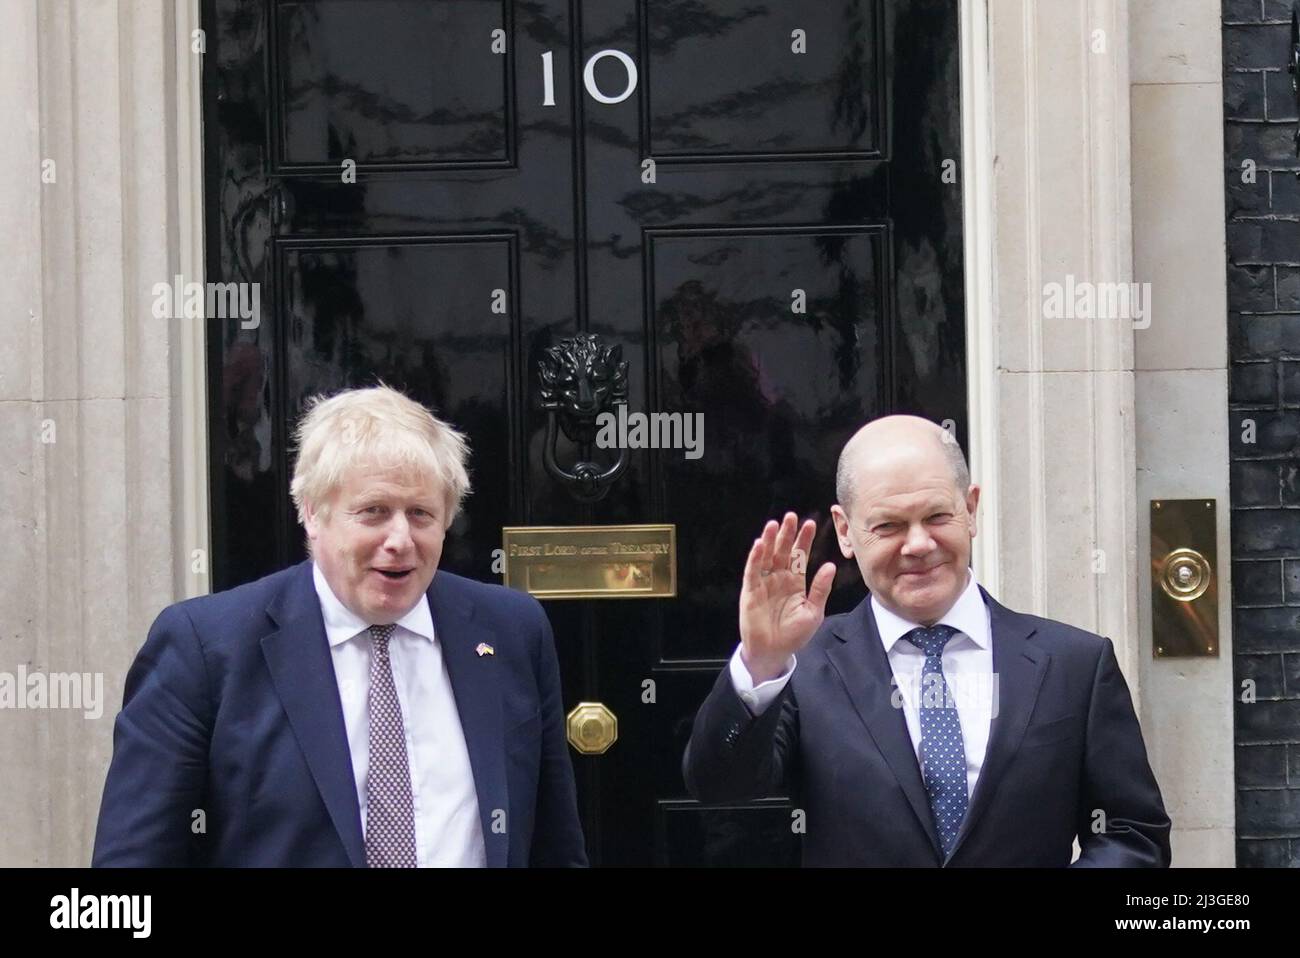 Bundeskanzler Olaf Scholz trifft in der Downing Street 10 in London zu einem Treffen mit Premierminister Boris Johnson ein. Bilddatum: Freitag, 8. April 2022. Stockfoto